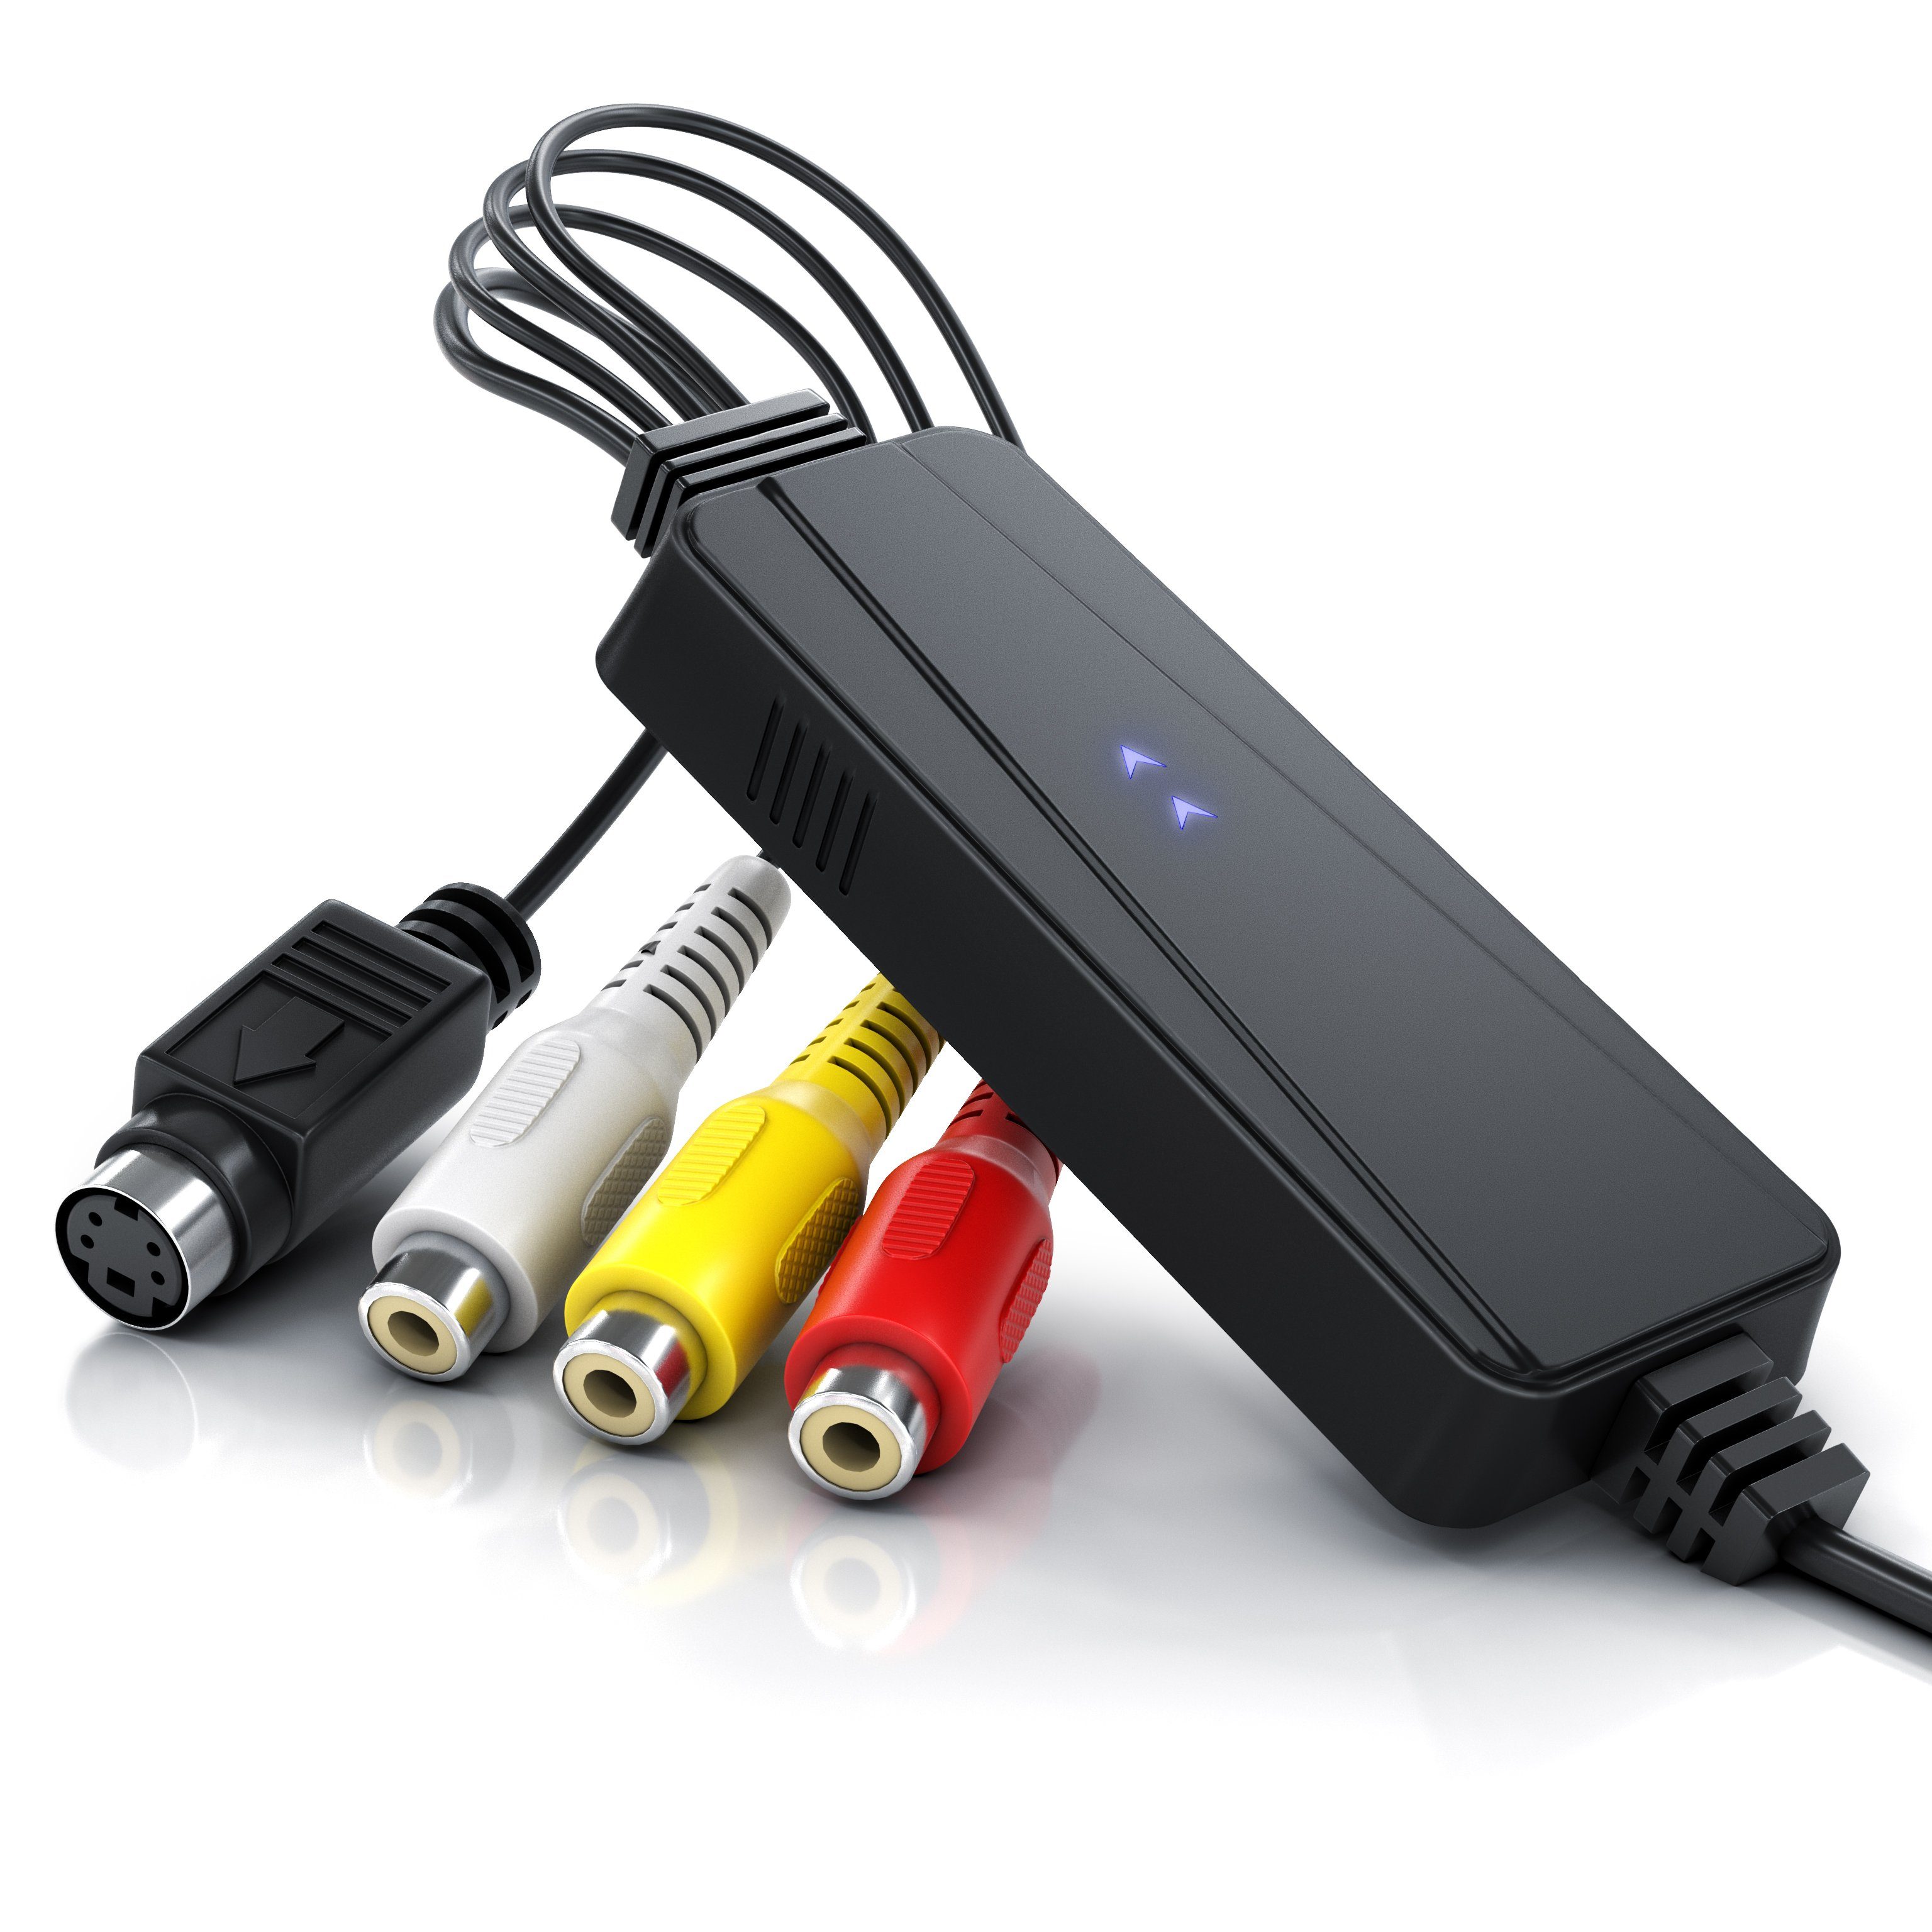 Aplic Audio- & Video-Adapter USB Typ A, S-Video, Composite CVBS, Cinch zu  USB 2.0 Typ A Stecker, S-Video Buchse (Mini-DIN 4), Composite CVBS Buchse,  Cinch Buchse, Cinch Buchse, USB Videograbber Audio Video